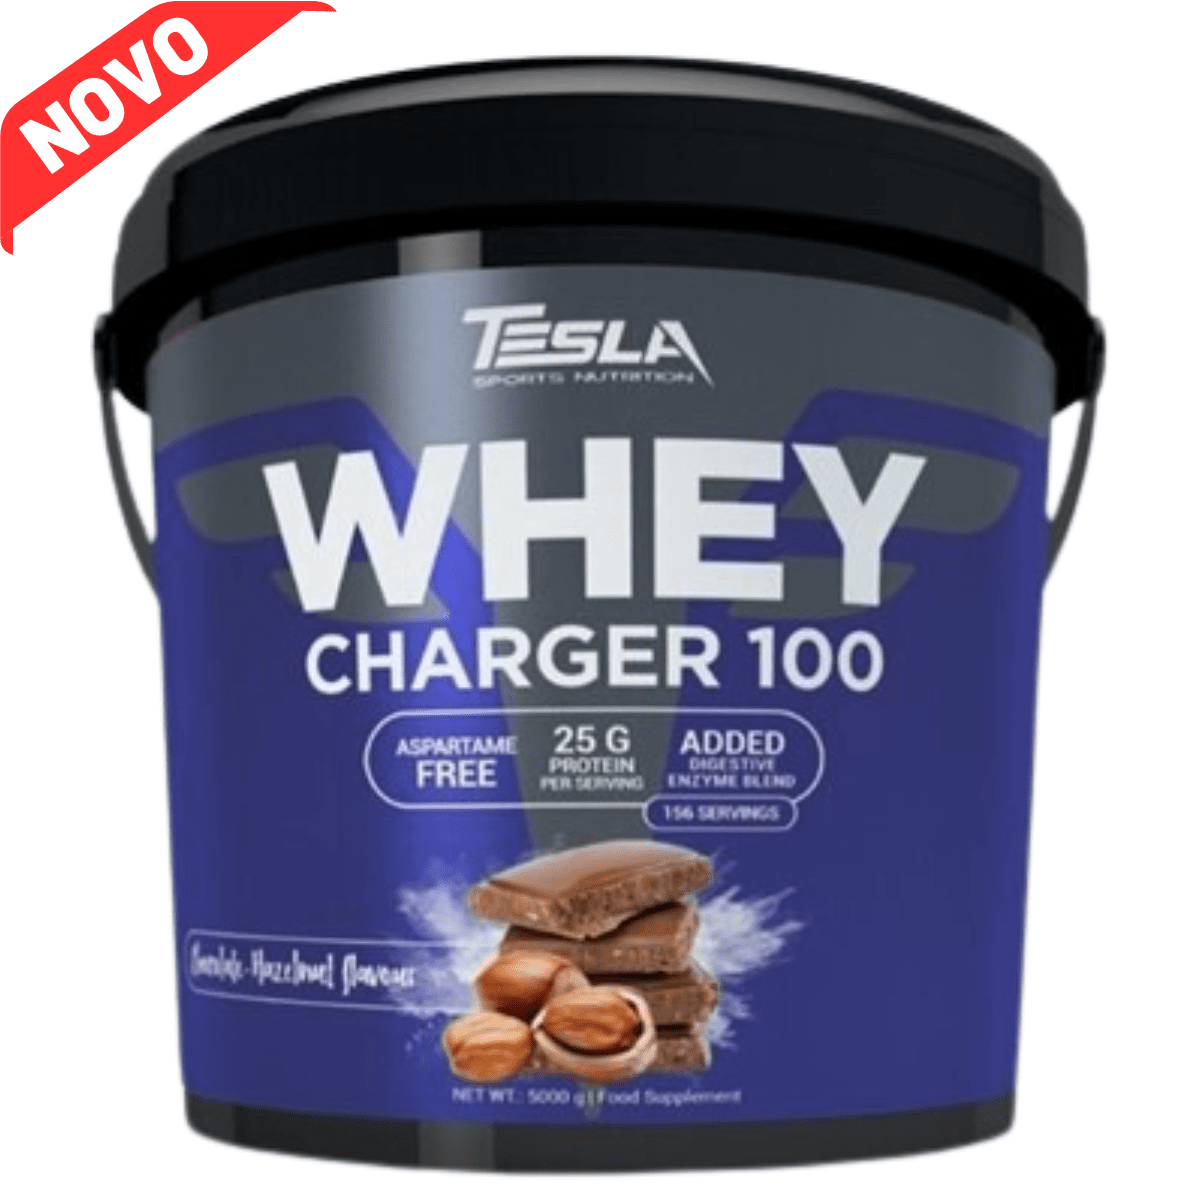 Tesla Whey Charger 100